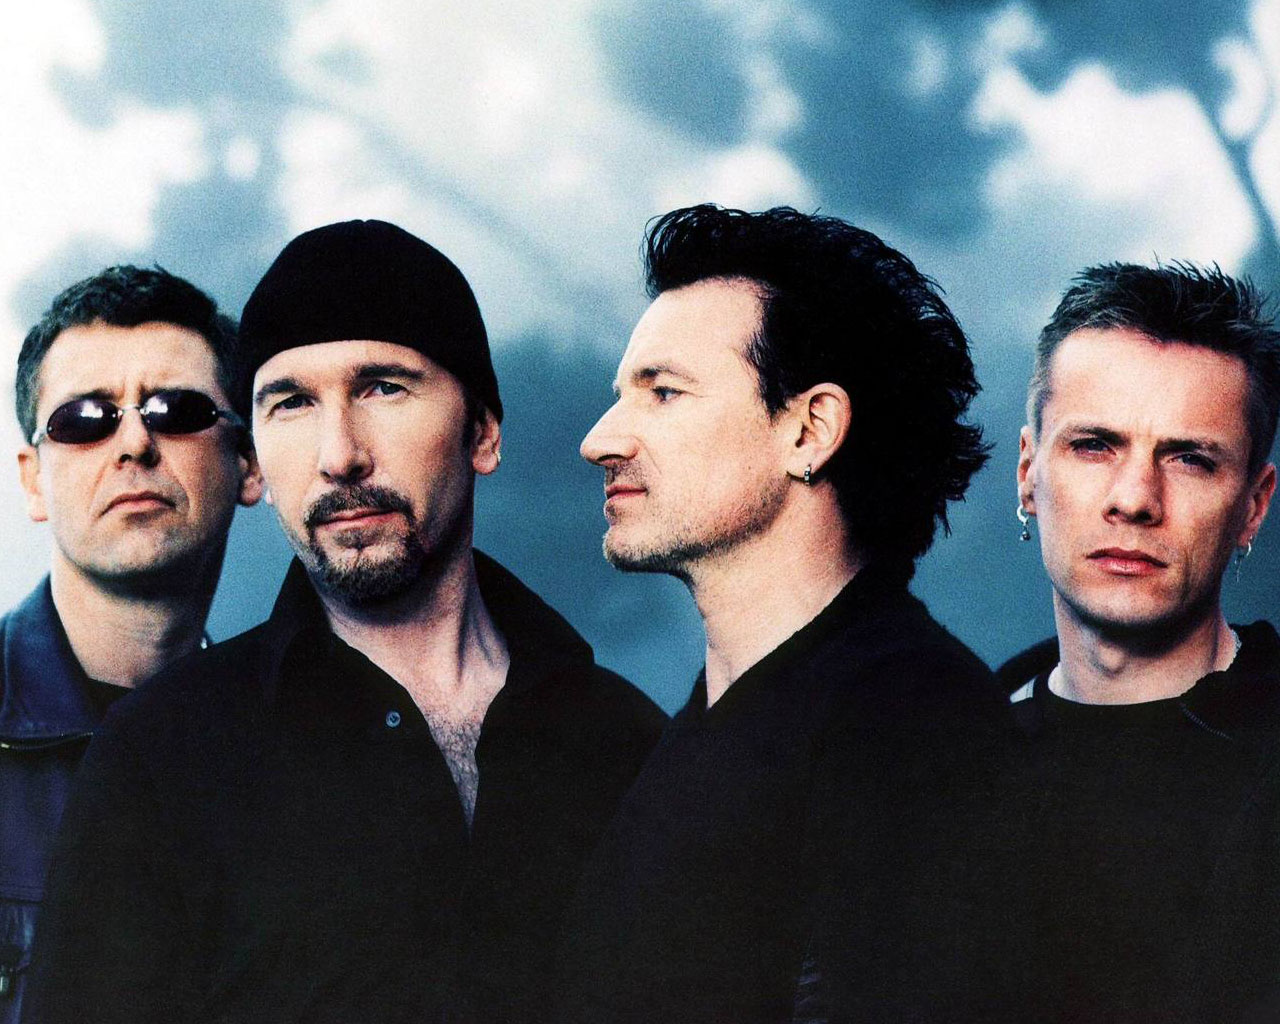 u2 241 888 - После сообщения об оружии в Стокгольме отменили концерт U2